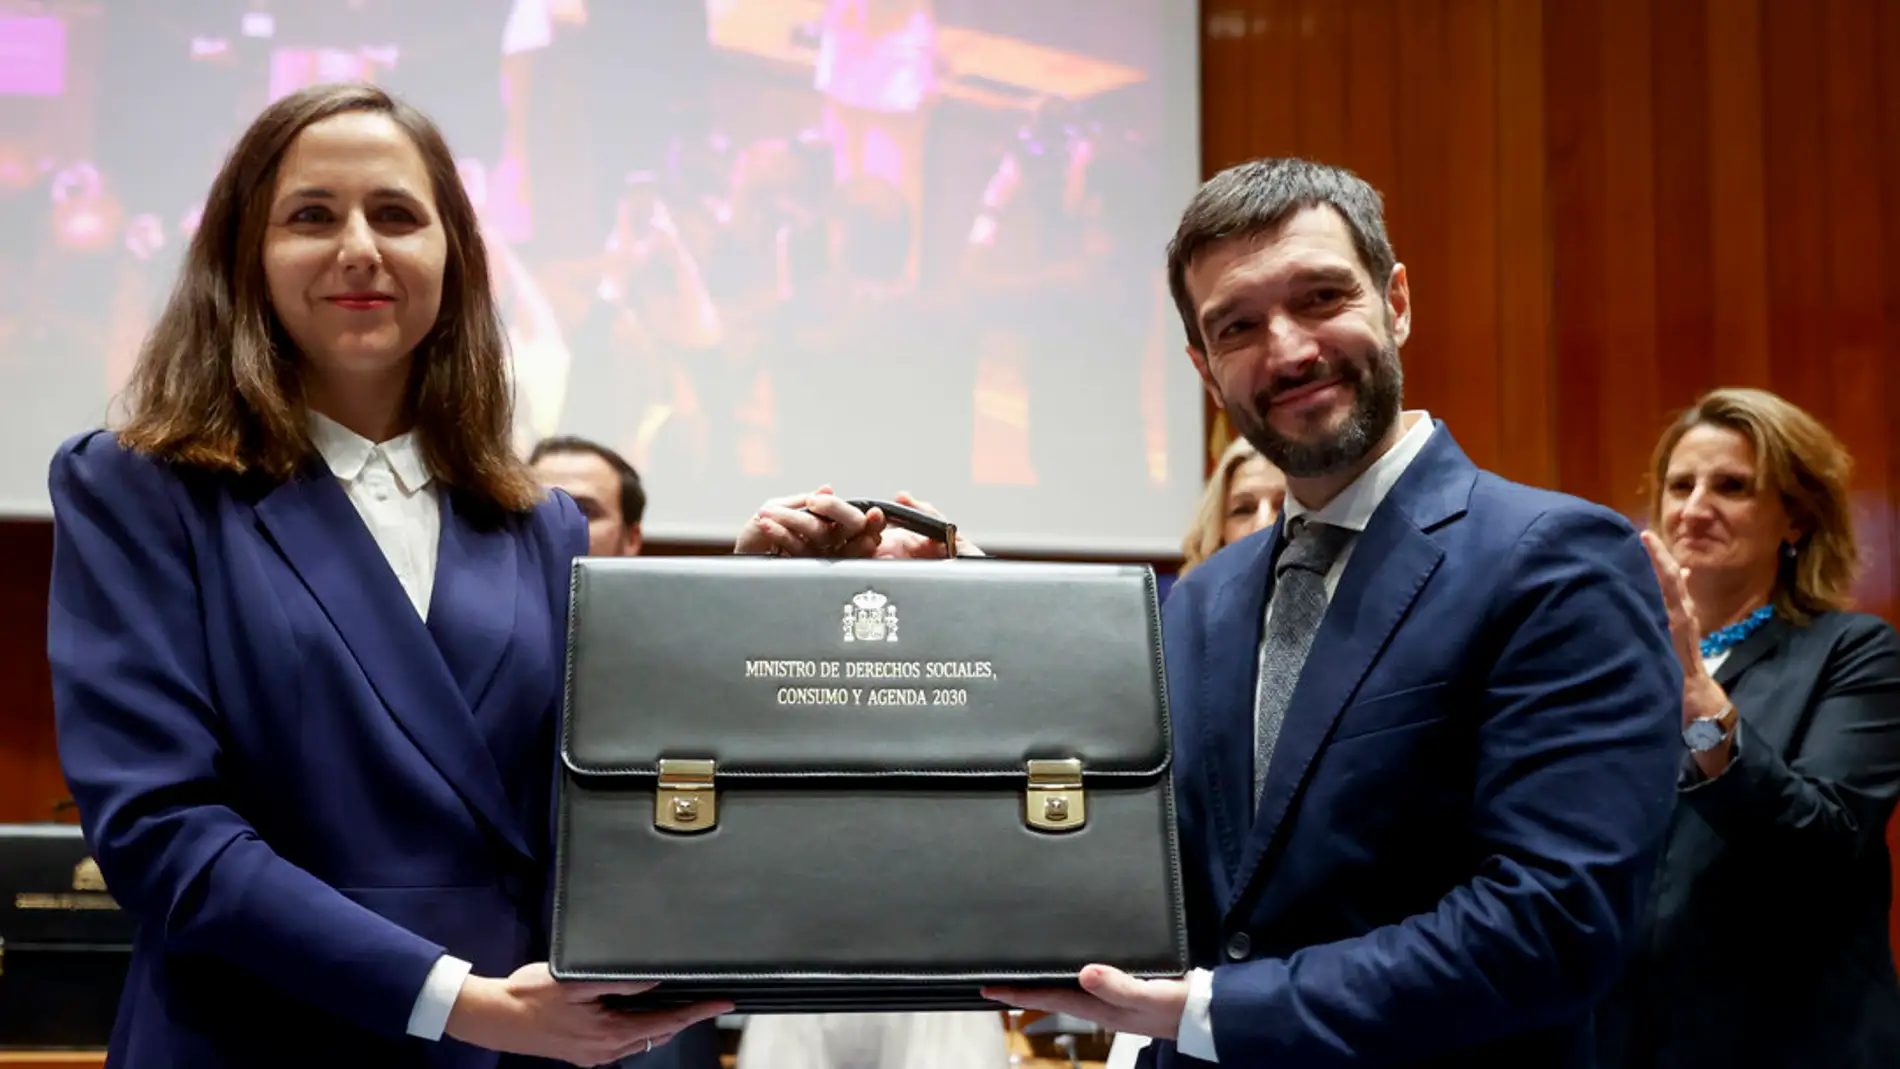 El nuevo ministro de Derechos Sociales, Consumo y Agenda 2030, Pablo Bustinduy, recibe la cartera de Ione Belarra/ EFE/Juan Carlos Hidalgo